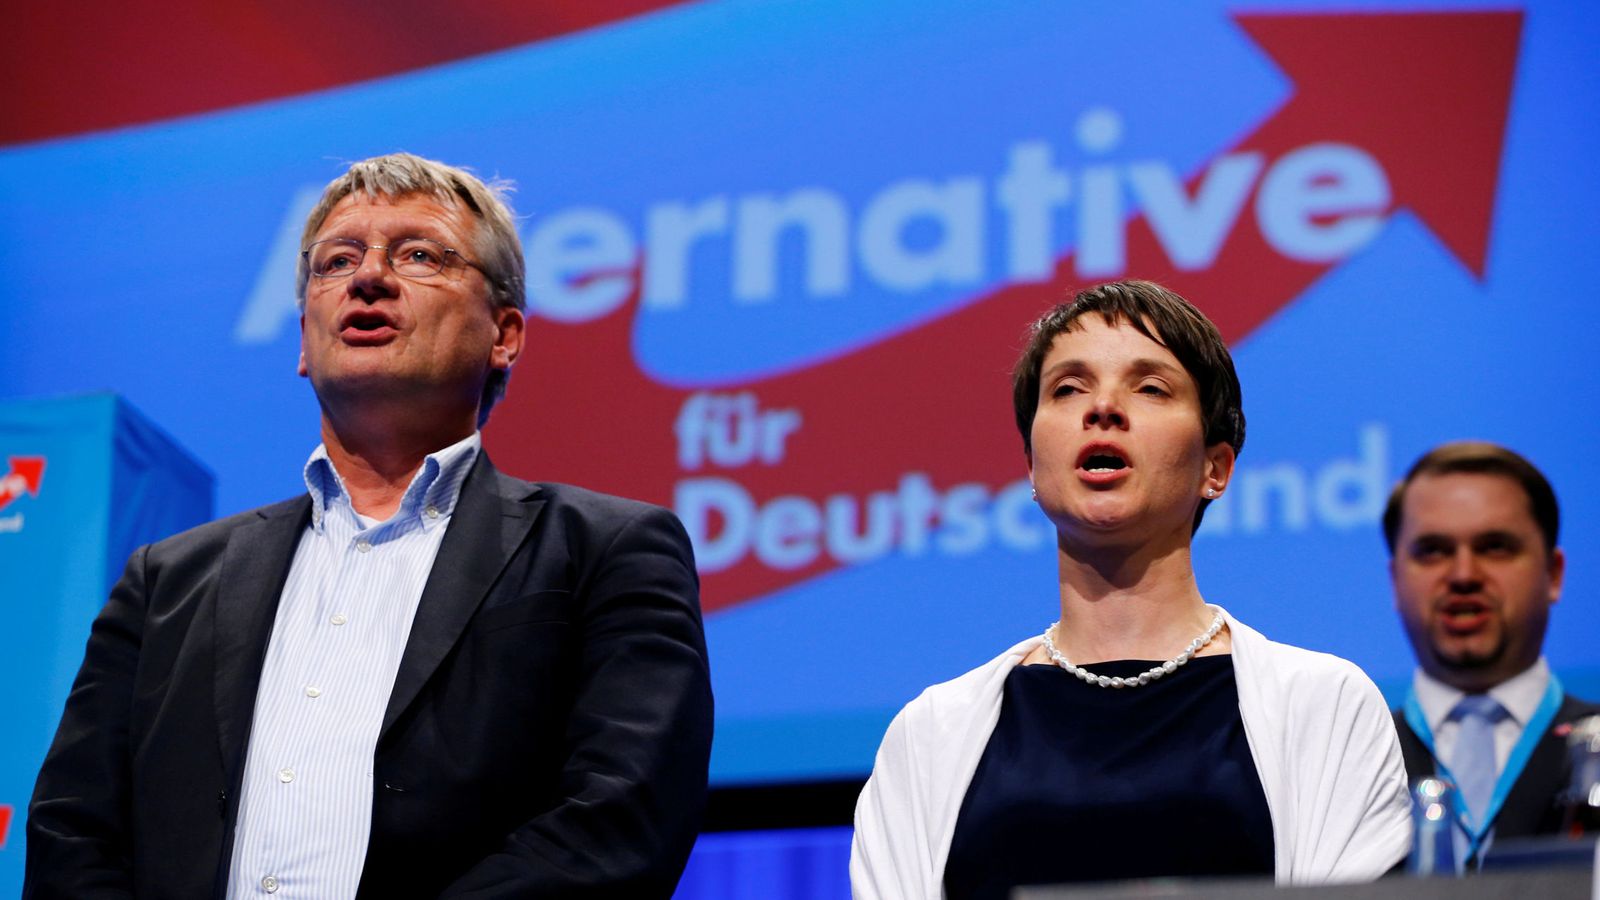 Foto: Jörg Meuthen y Frauke Petry cantan durante el congreso de AfD en Stuttgart, en mayo de 2016. (Reuters)